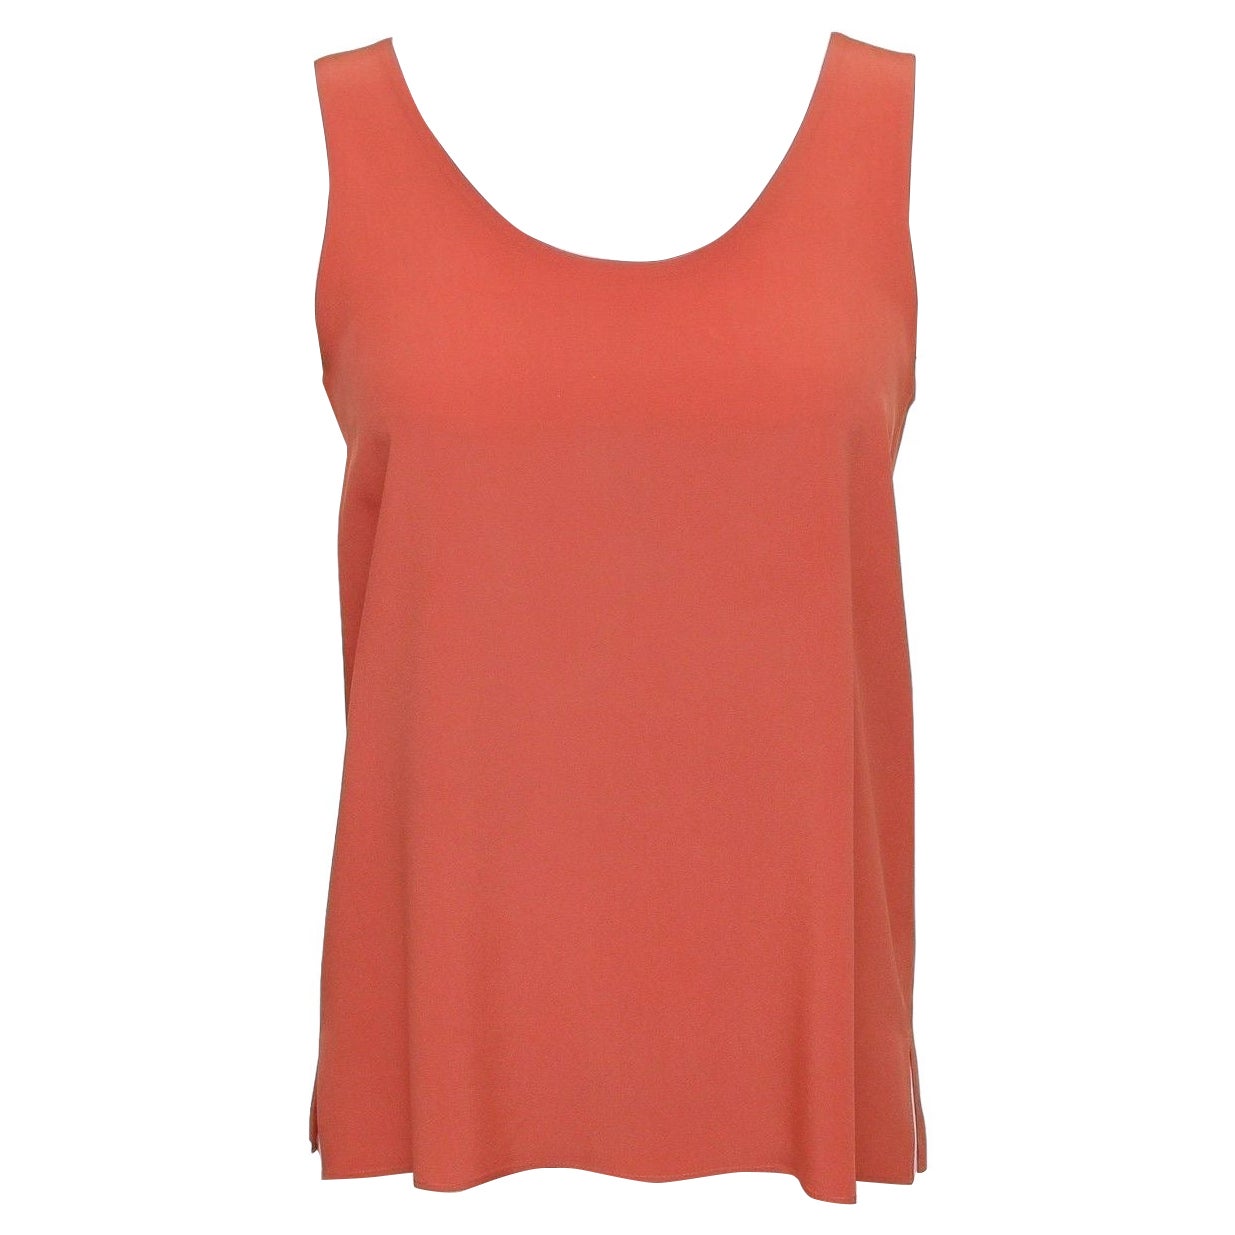 Chloe 12S Orange Seide ärmellose Bluse Top Kleid Shirt 34 im Angebot